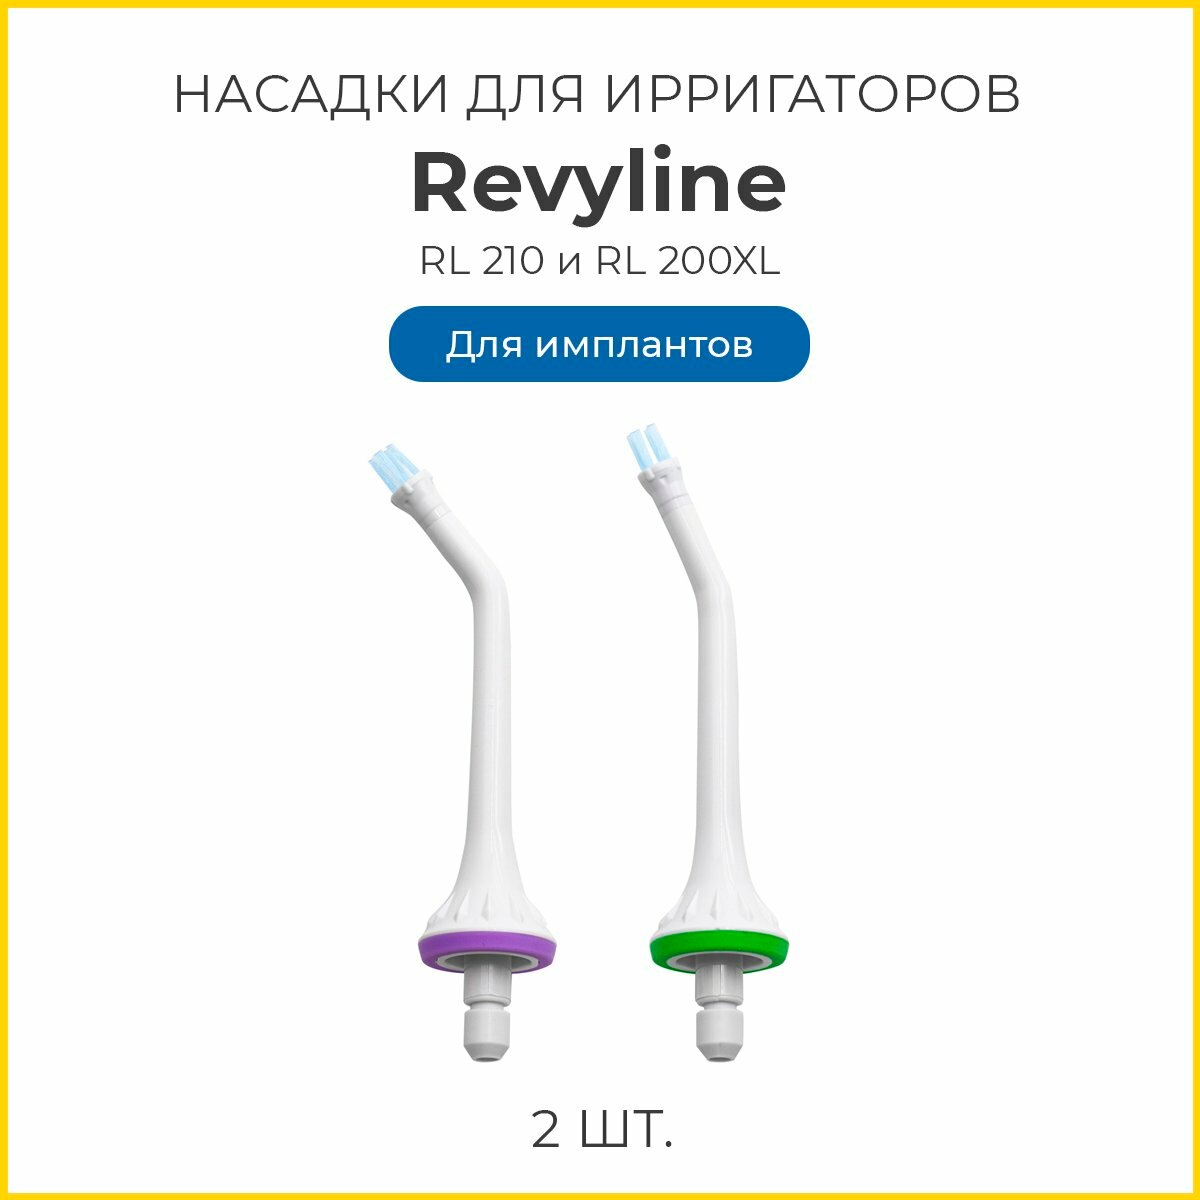 Сменные насадки для ирригаторов Revyline RL 210, RL 200/200XL для имплантов, 2 шт.